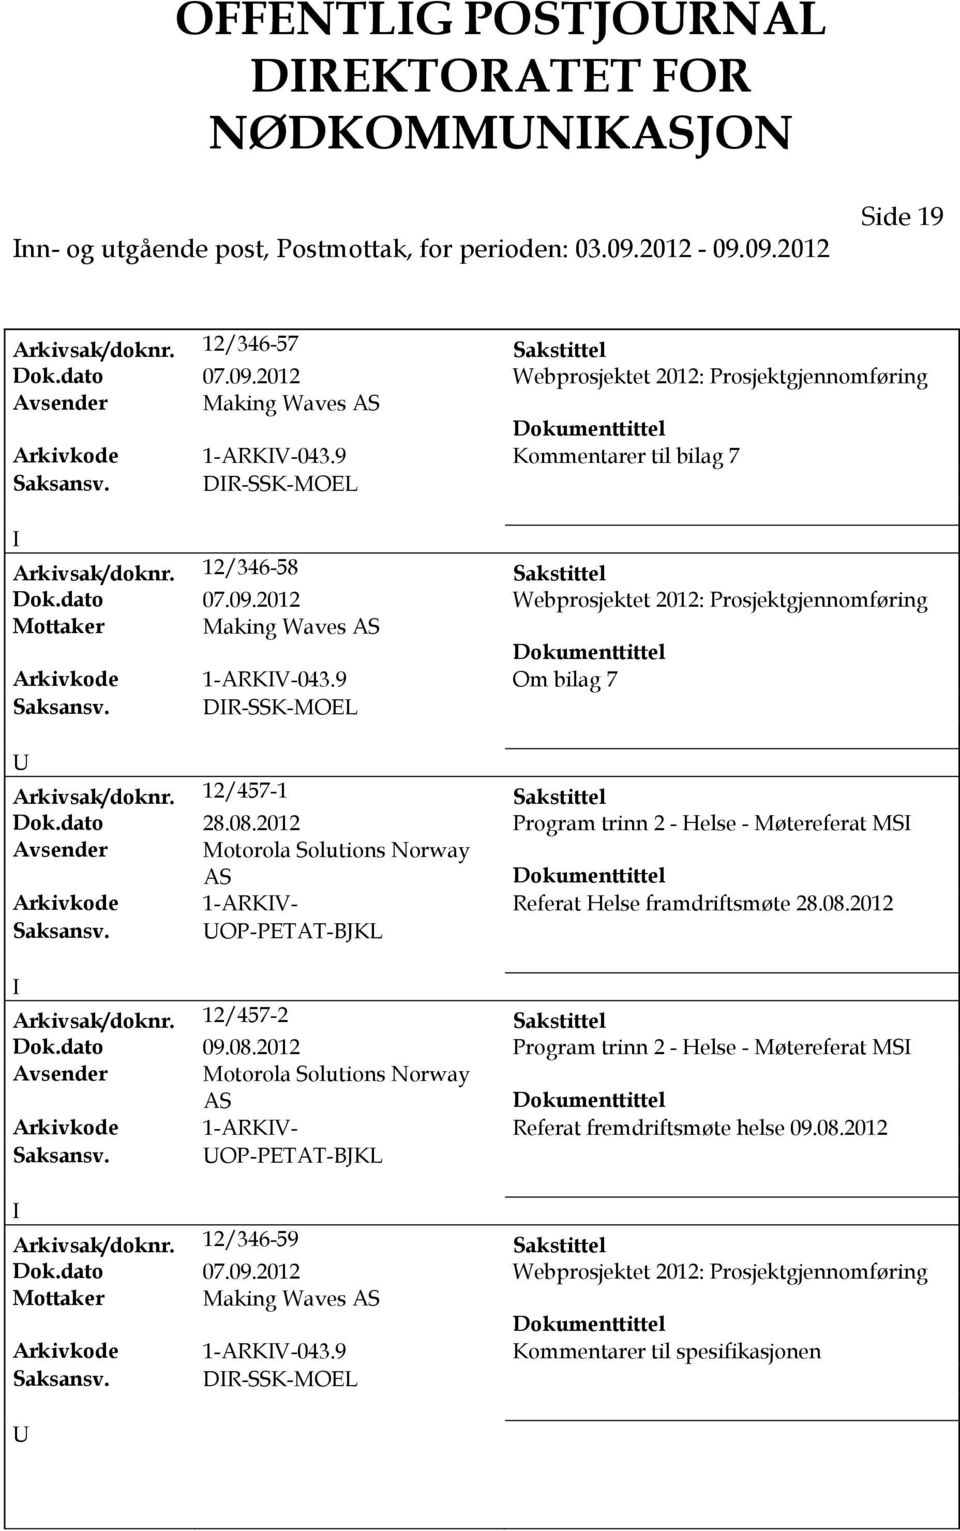 9 Om bilag 7 Saksansv. DR-SSK-MOEL Arkivsak/doknr. 12/457-1 Sakstittel Dok.dato 28.08.